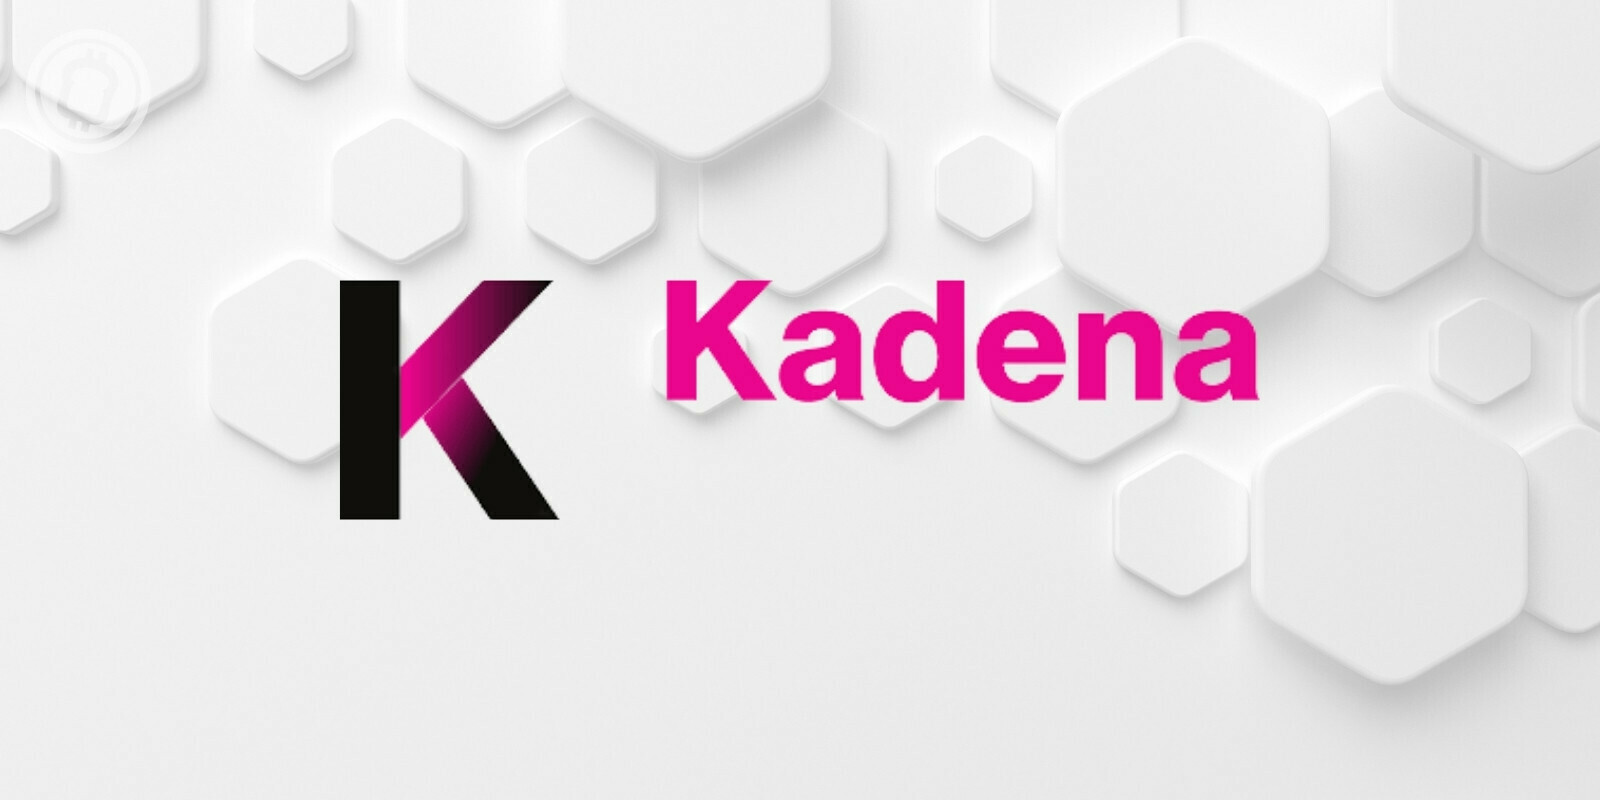 Kadena (KDA) lance un fonds de subvention à 100 millions de dollars pour le Web 3.0